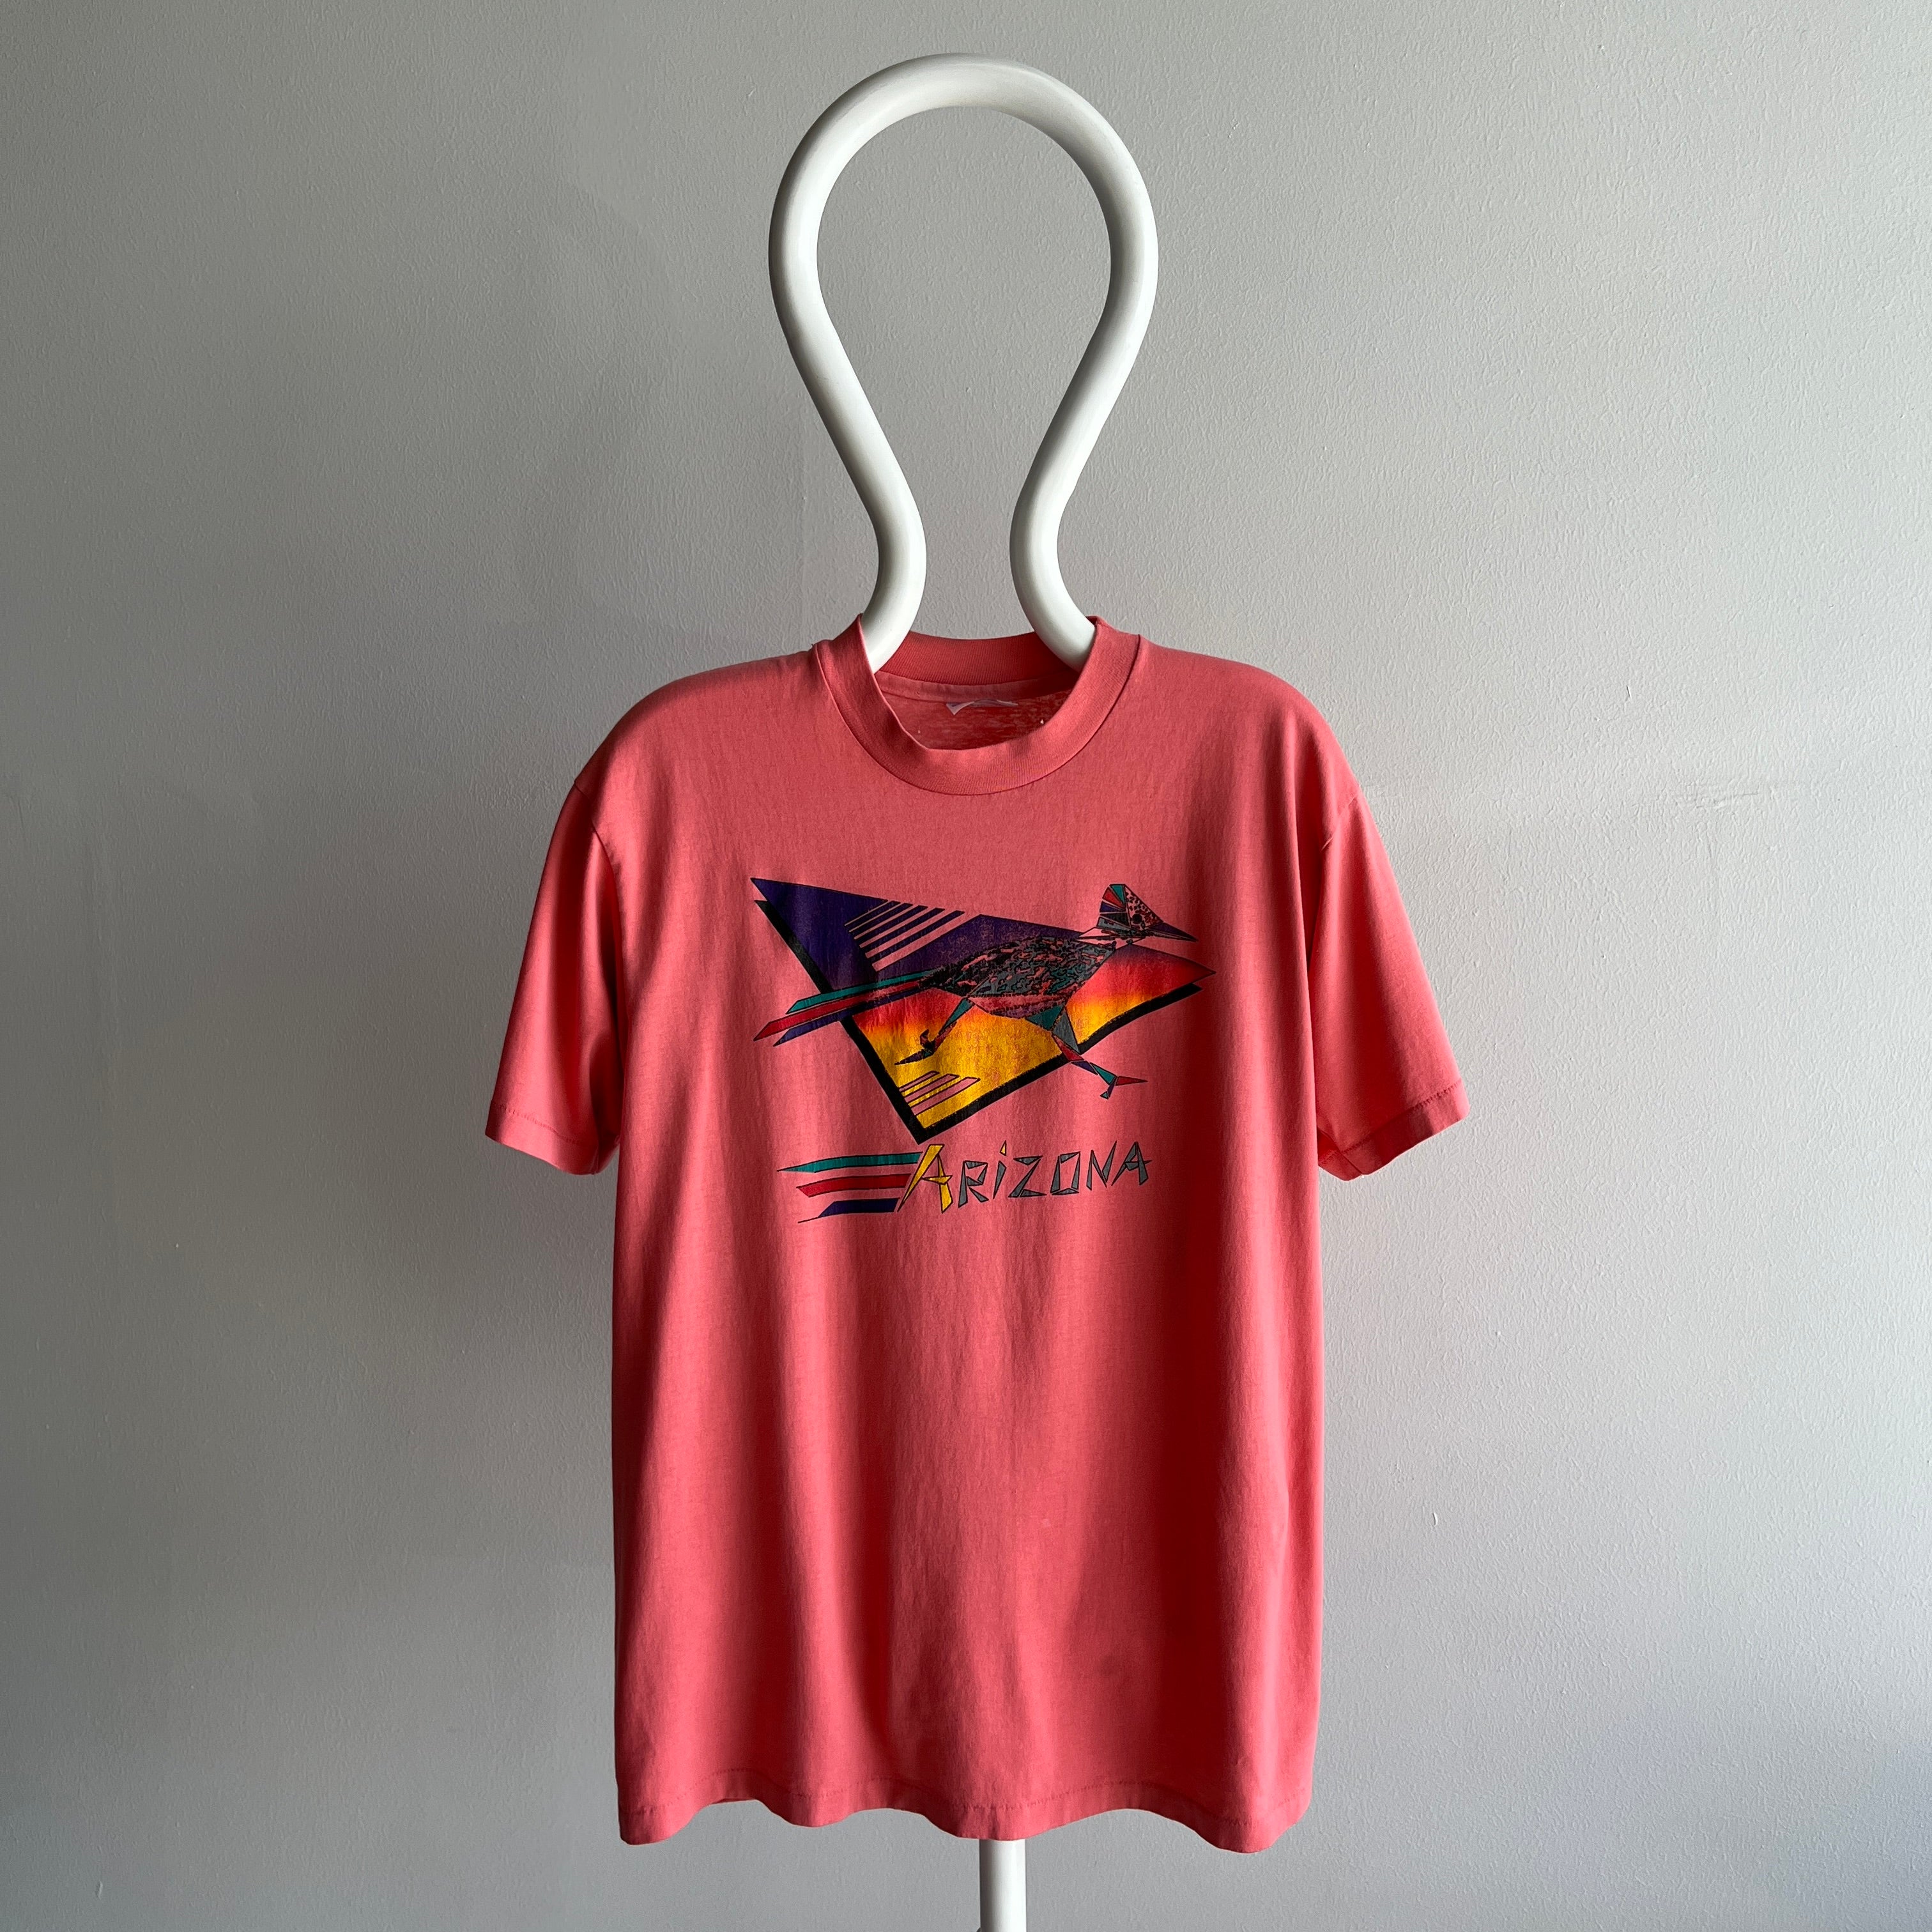 1980s Arizona Roadrunner T-Shirt